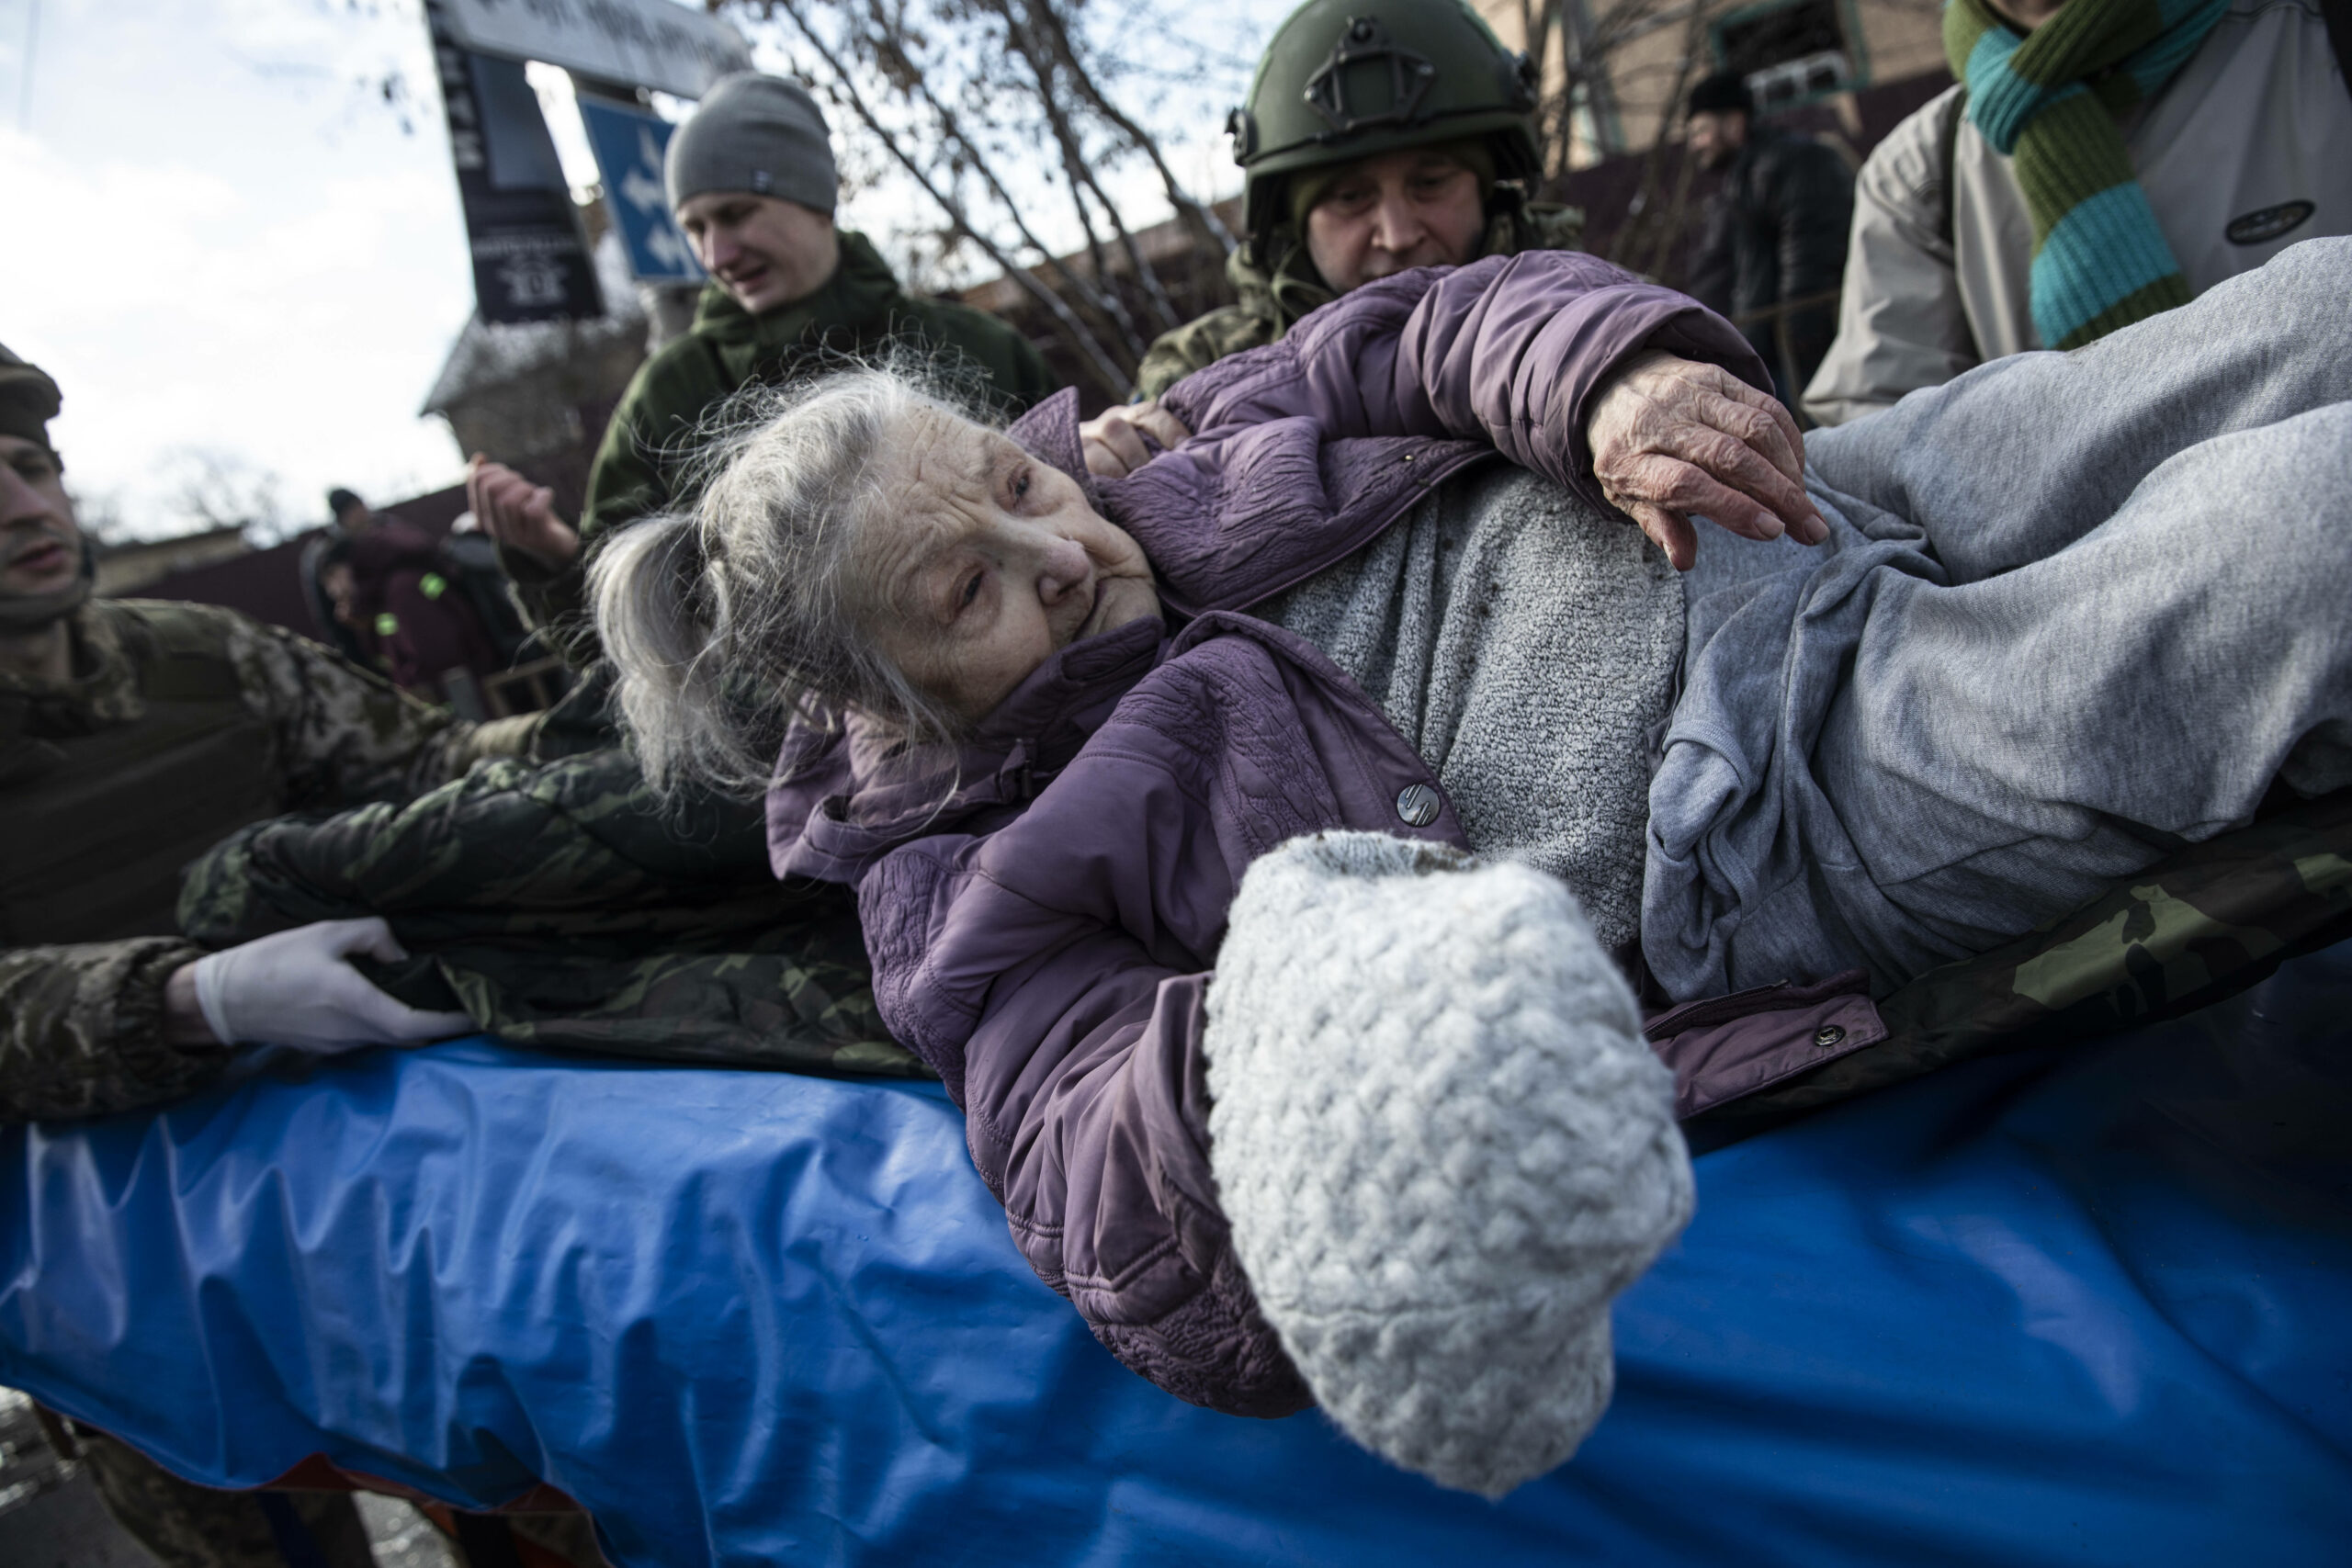 Участники территориальной самообороны помогают эвакуировать пожилую женщину из города Ирпин в Киев. 8 марта 2022 года. Фото Heidi Levine/Sipa Press/Scanpix/LETA